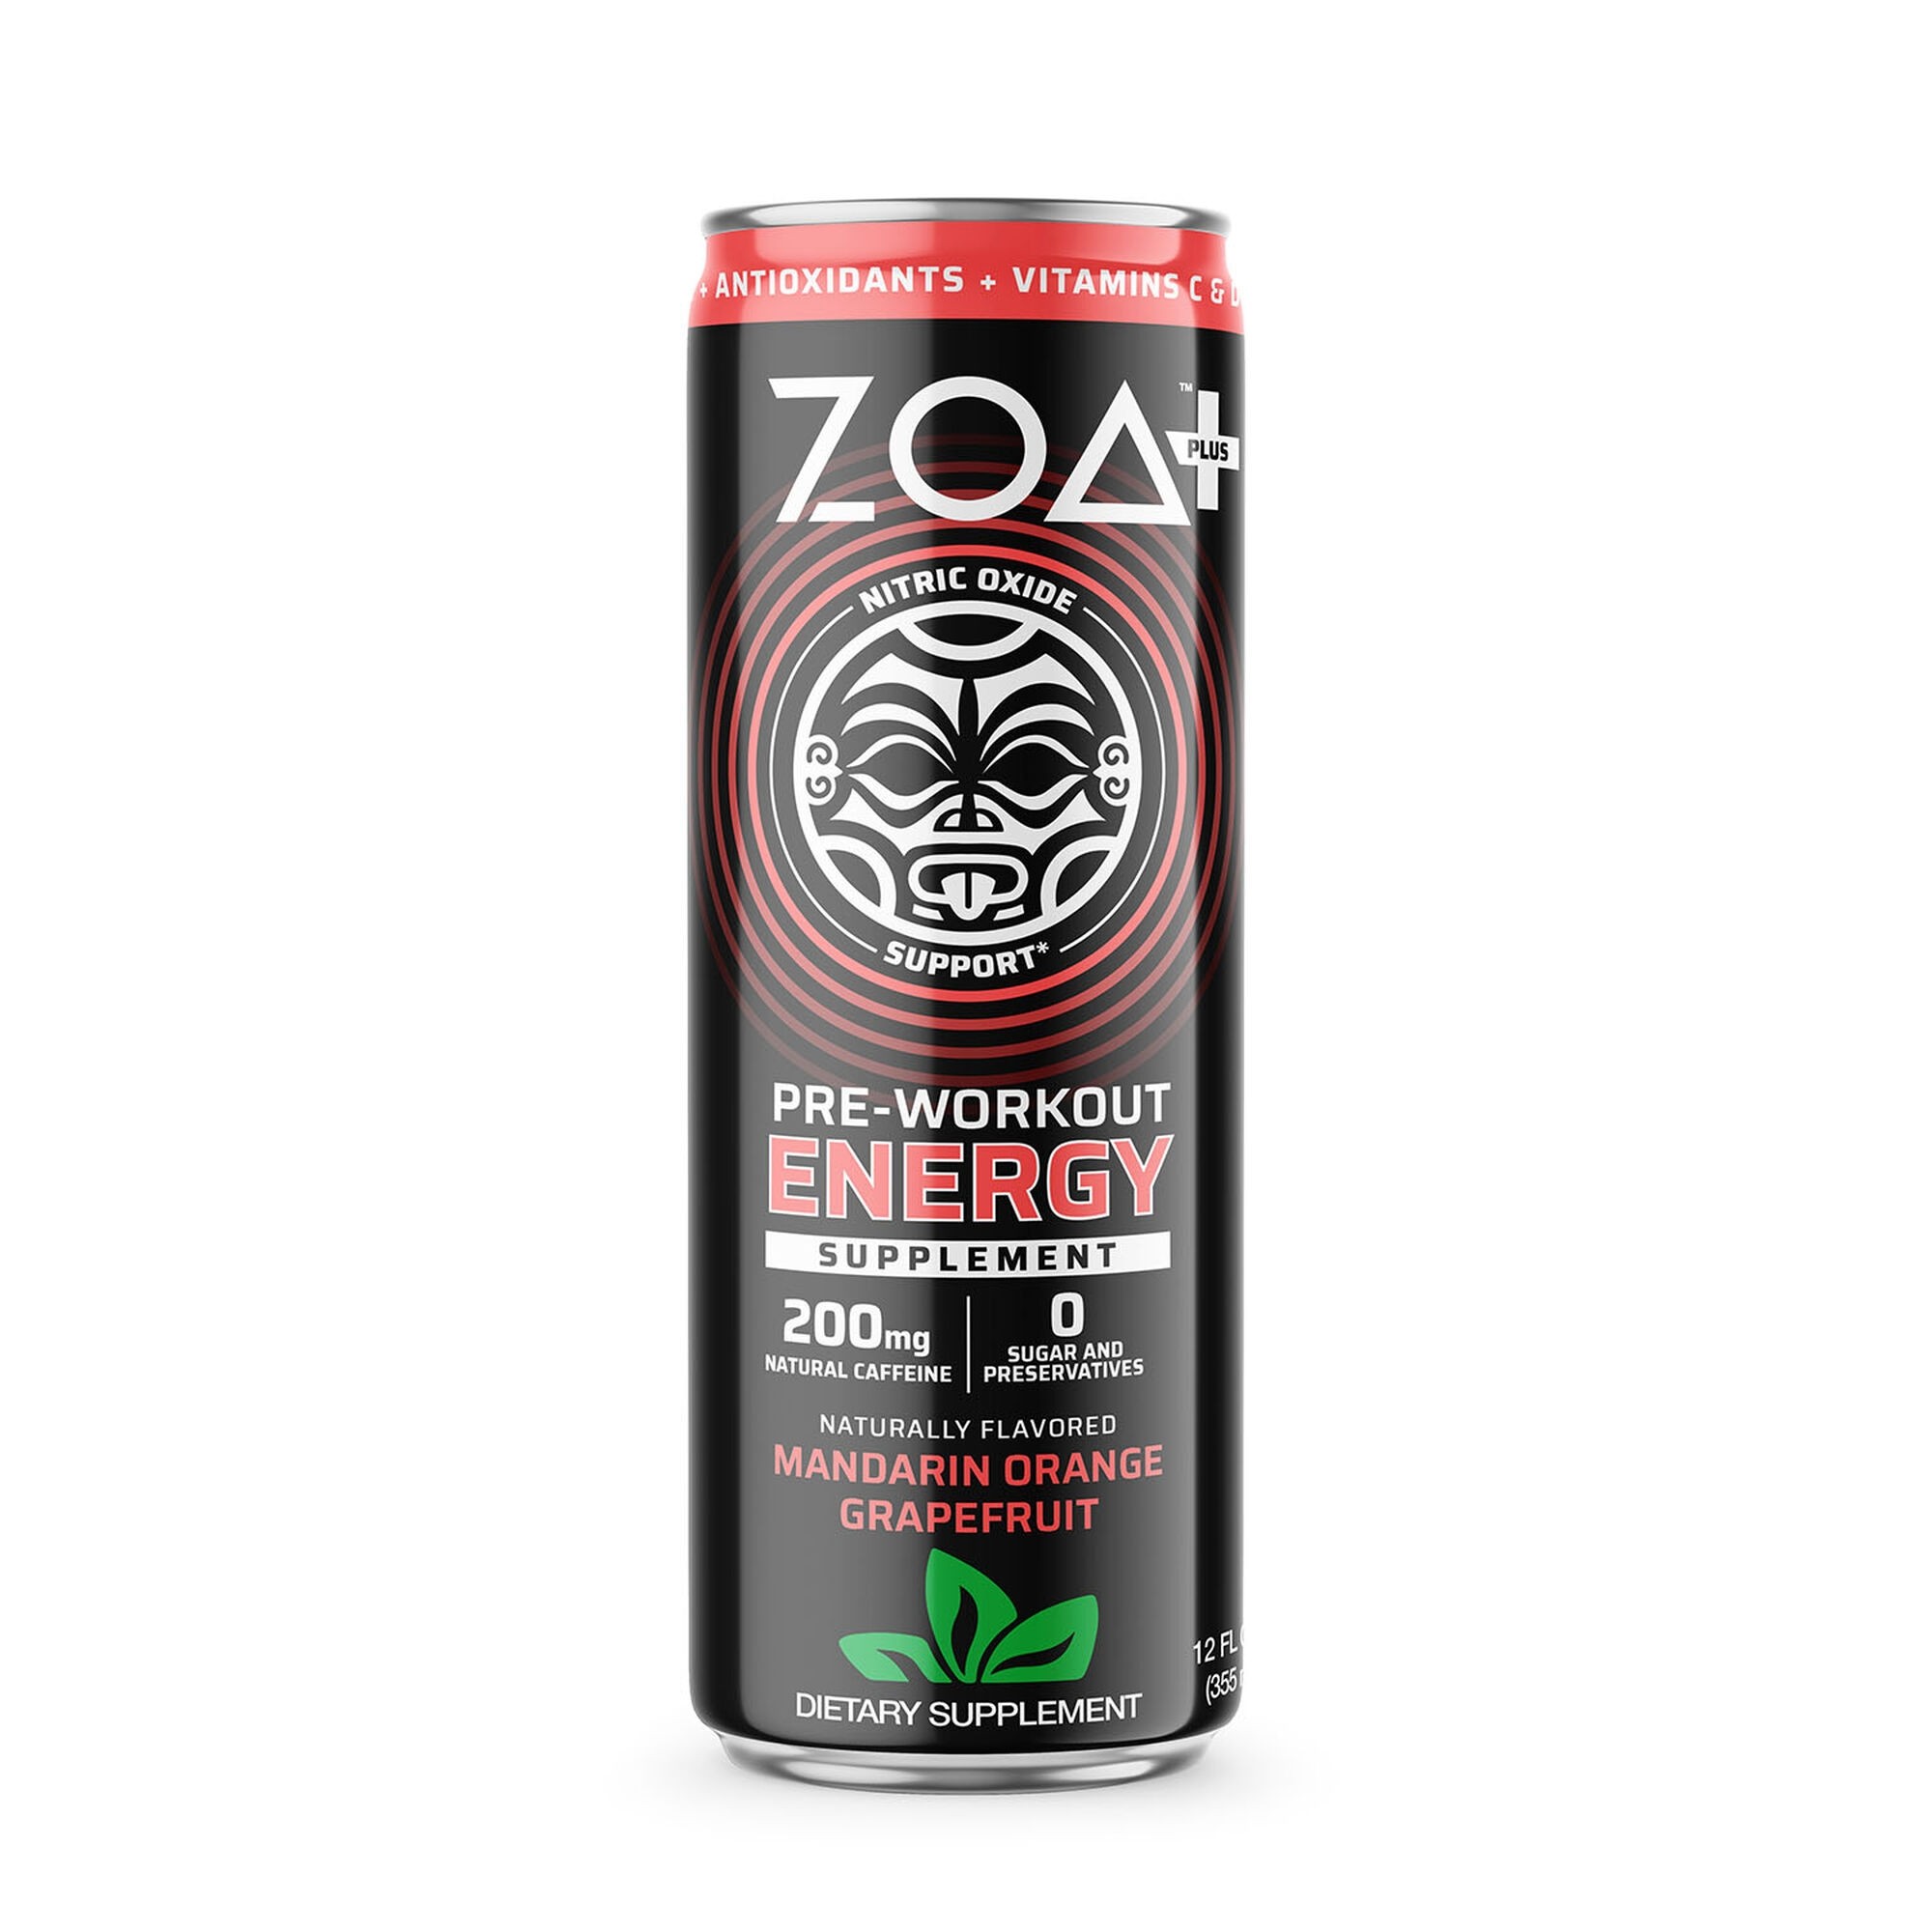 Preparate pentru efort (creșterea nivelului energetic) - ZOA+ Pre-Workout Energy Drink, bautura energizanta pre-antrenament cu aroma de mandarine si grapefruit, 355 ml, GNC, farmaciamare.ro